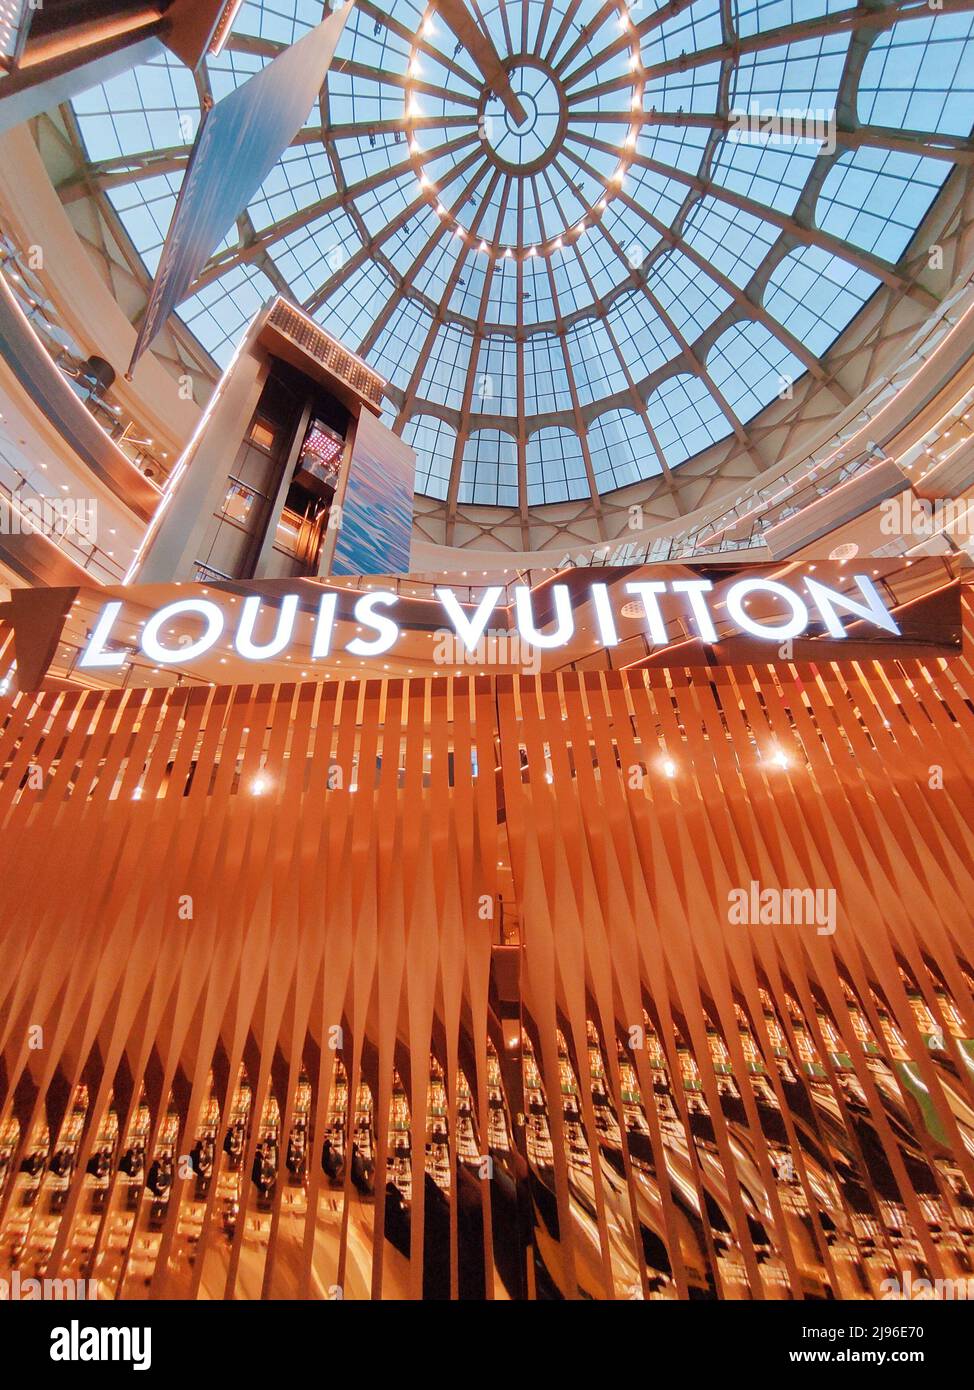 Louis Vuitton Flagship / Shenzhen, China@Boutique